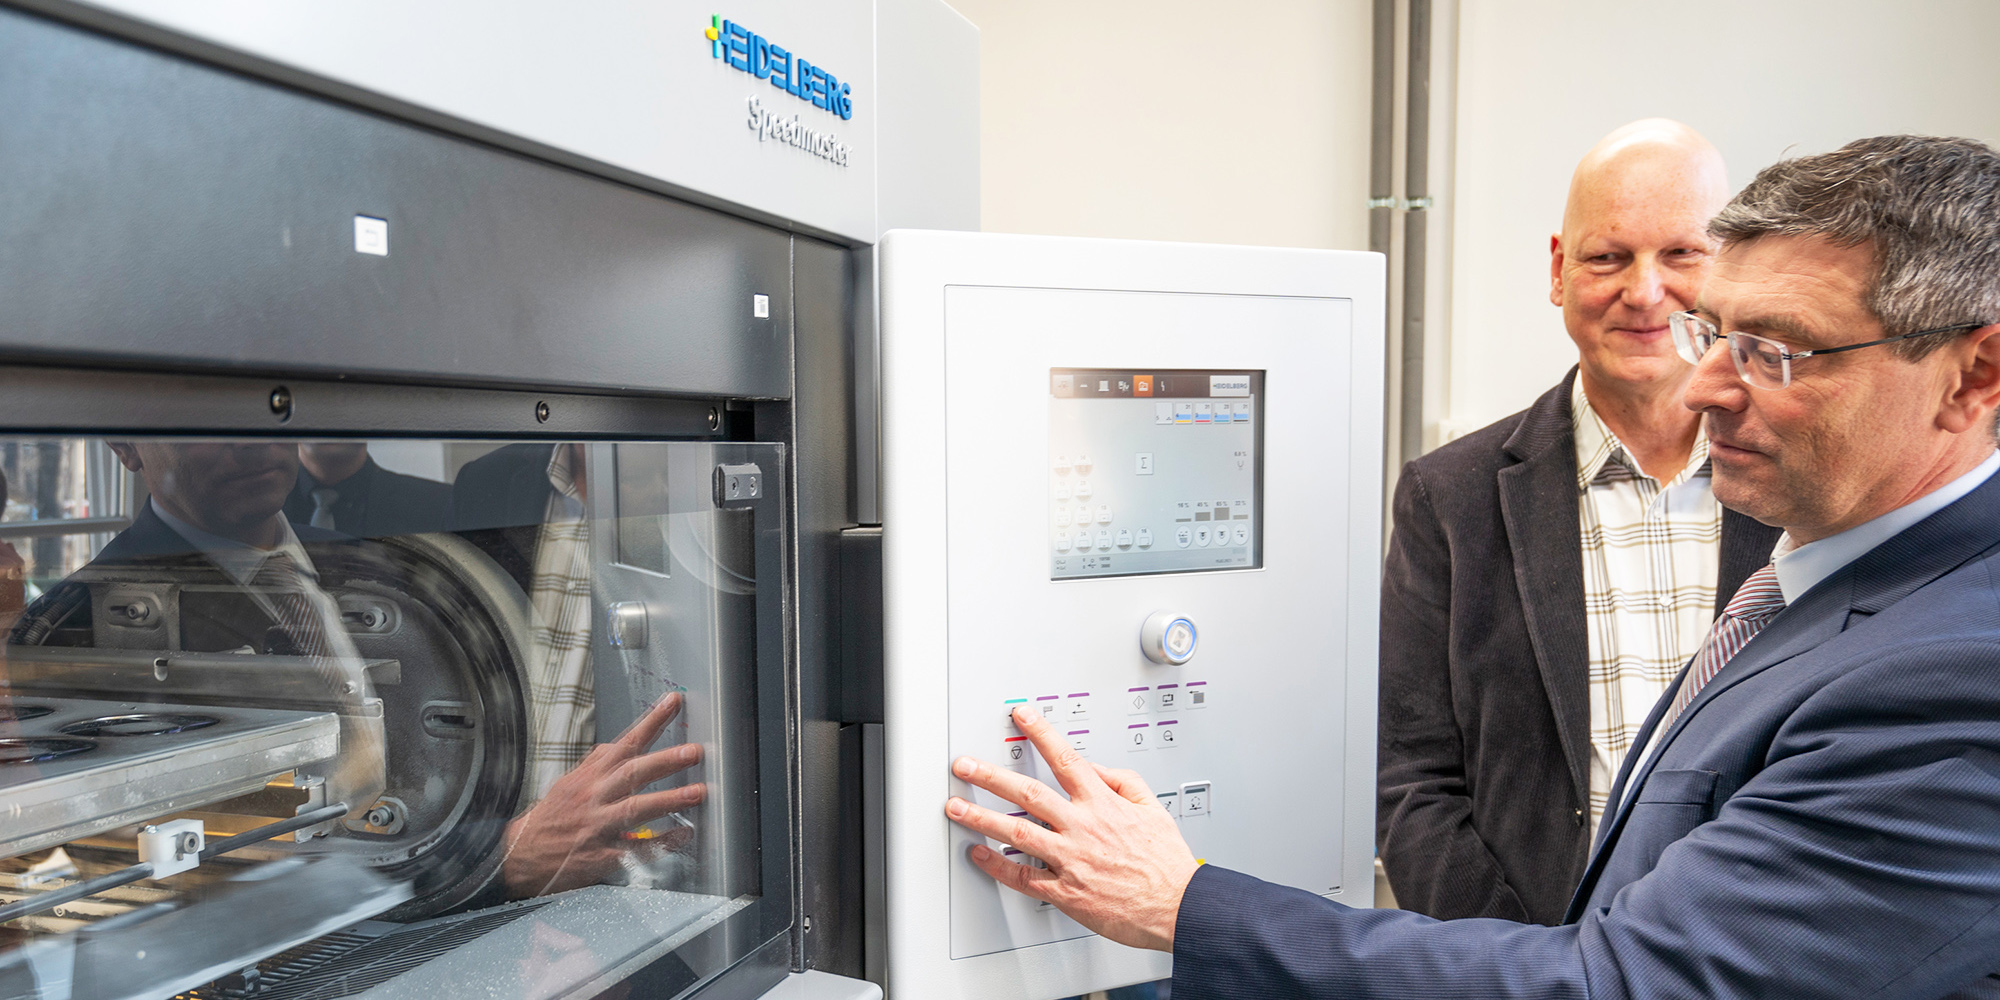 Foto von Staatssekretär Uwe Schüler (MIK) im Beisein des LGB-Geschäftsführers (i.V.) Bernd Sorge wie er symbolisch den Knopf an einer Druckmaschine betätigt